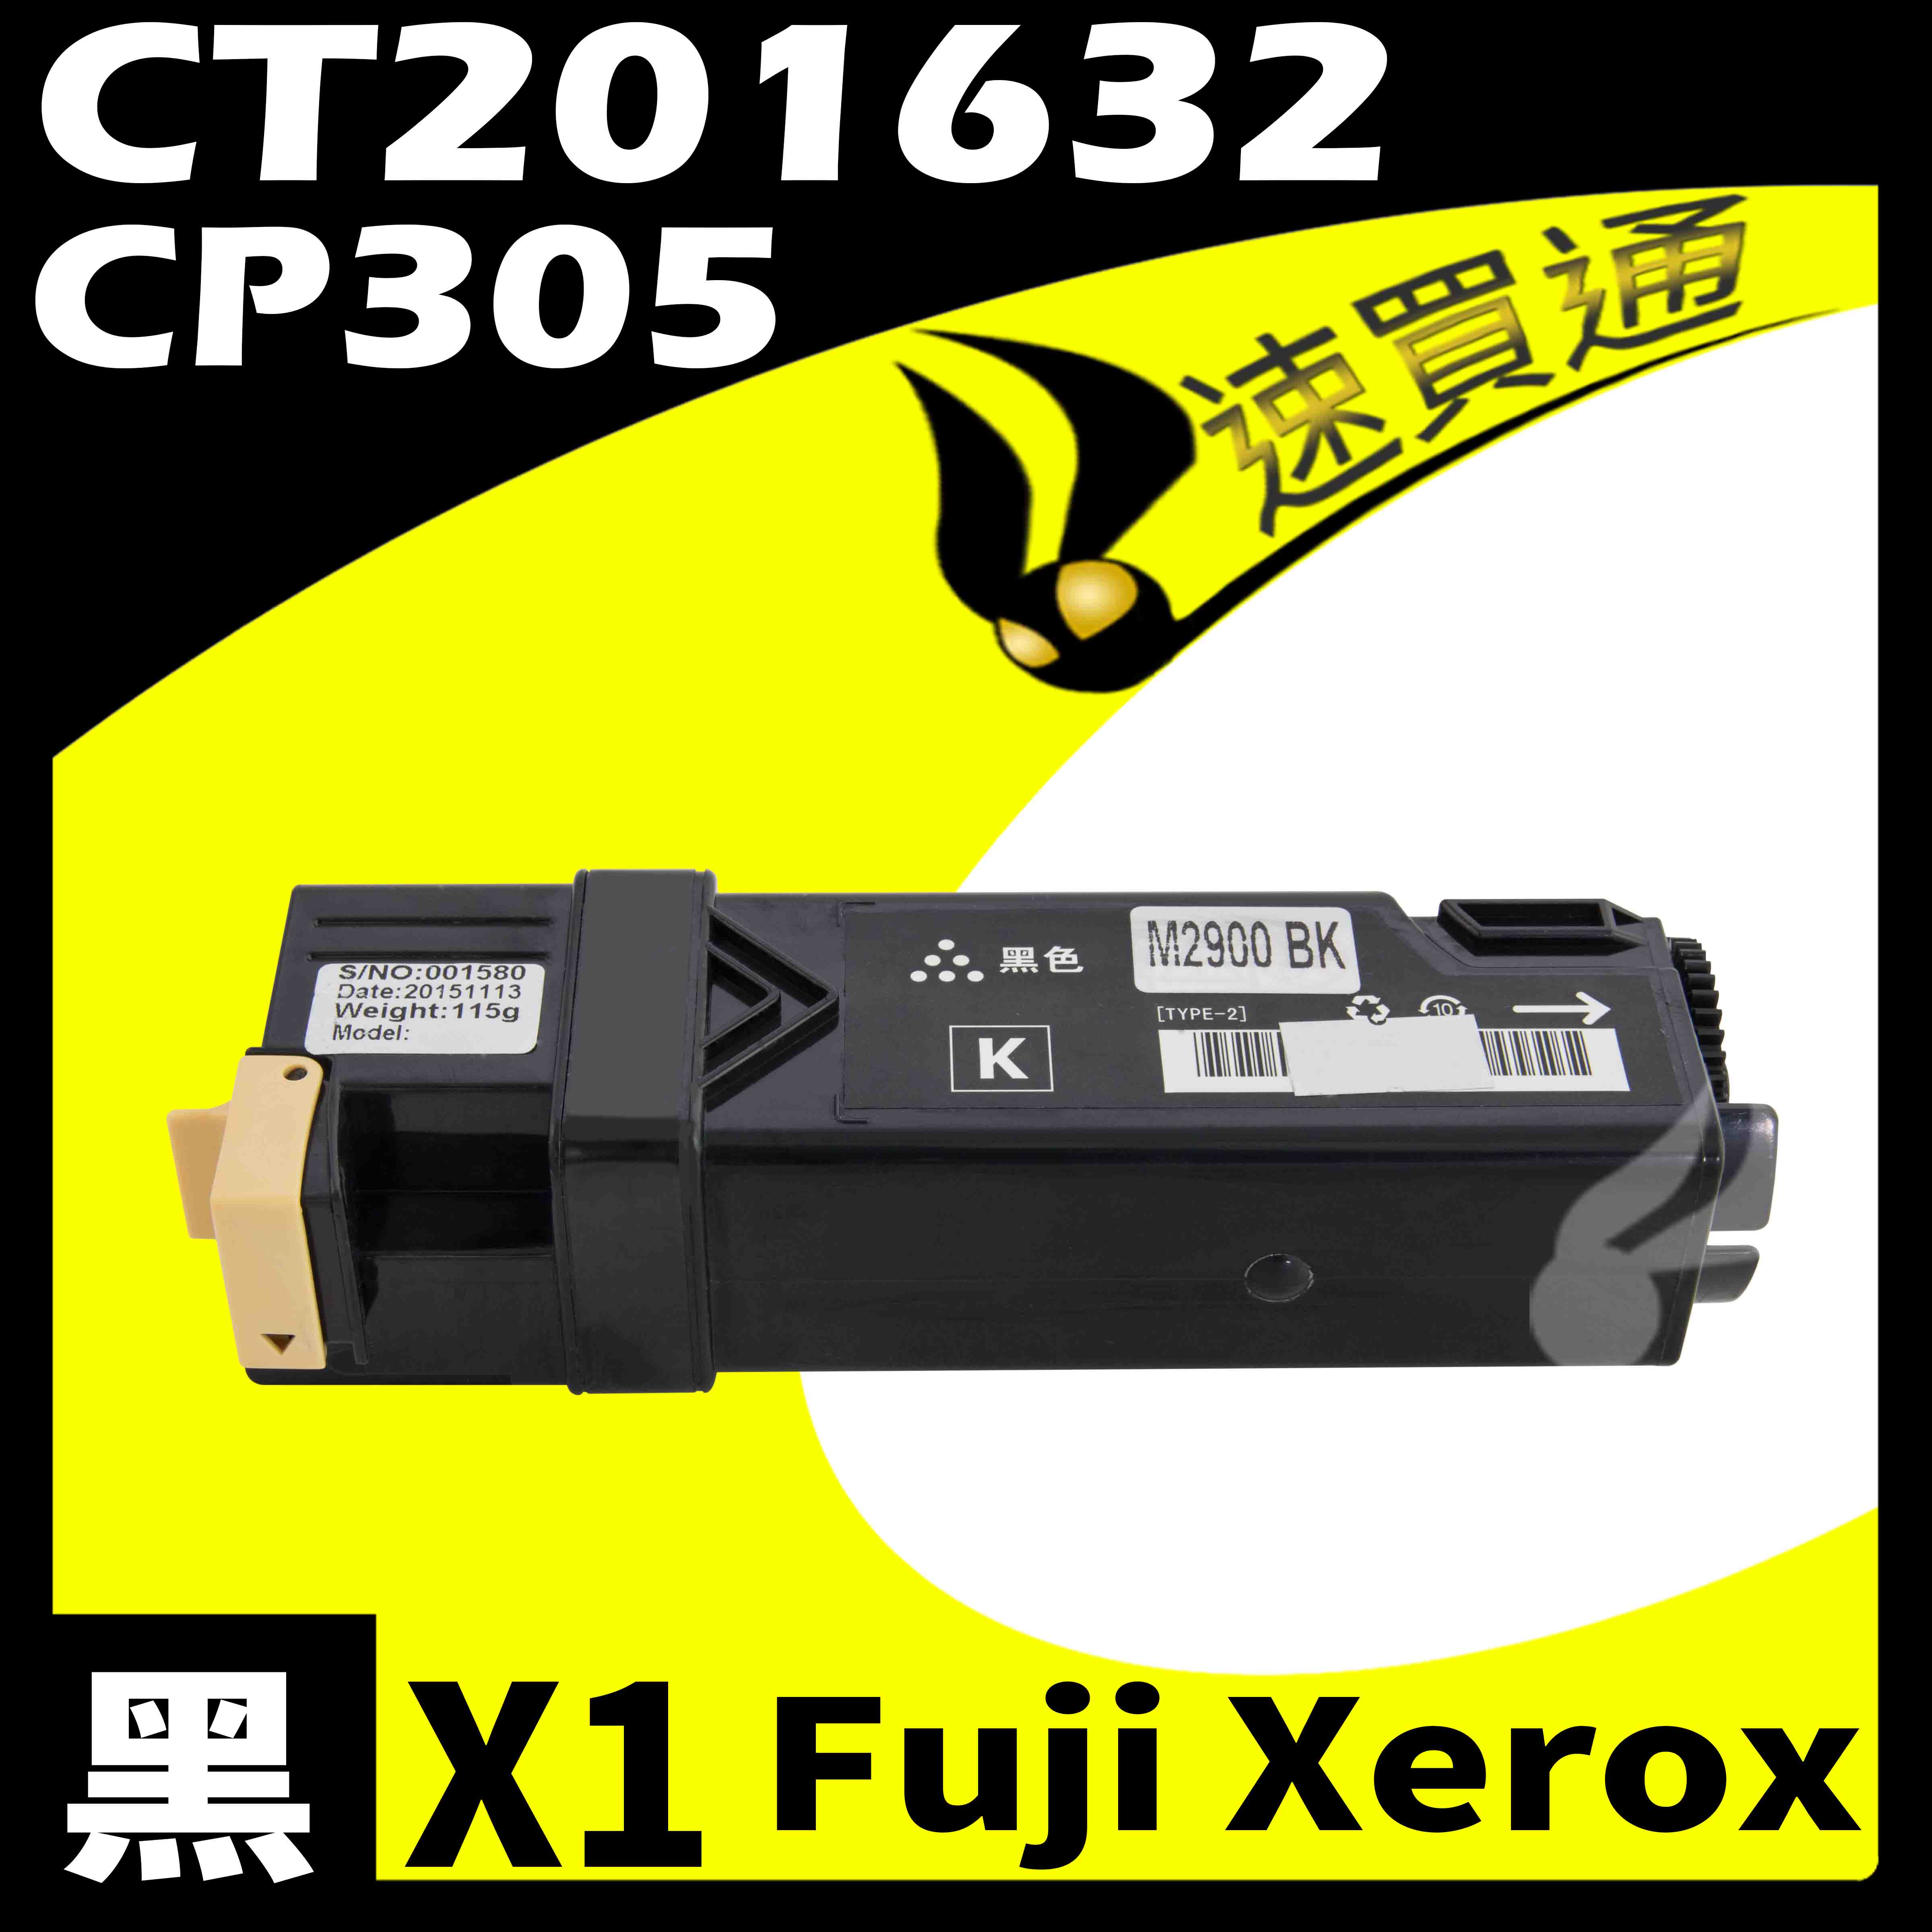 【速買通】Fuji Xerox CP305/CT201632 黑 相容彩色碳粉匣 適用 CP305d/CM305df